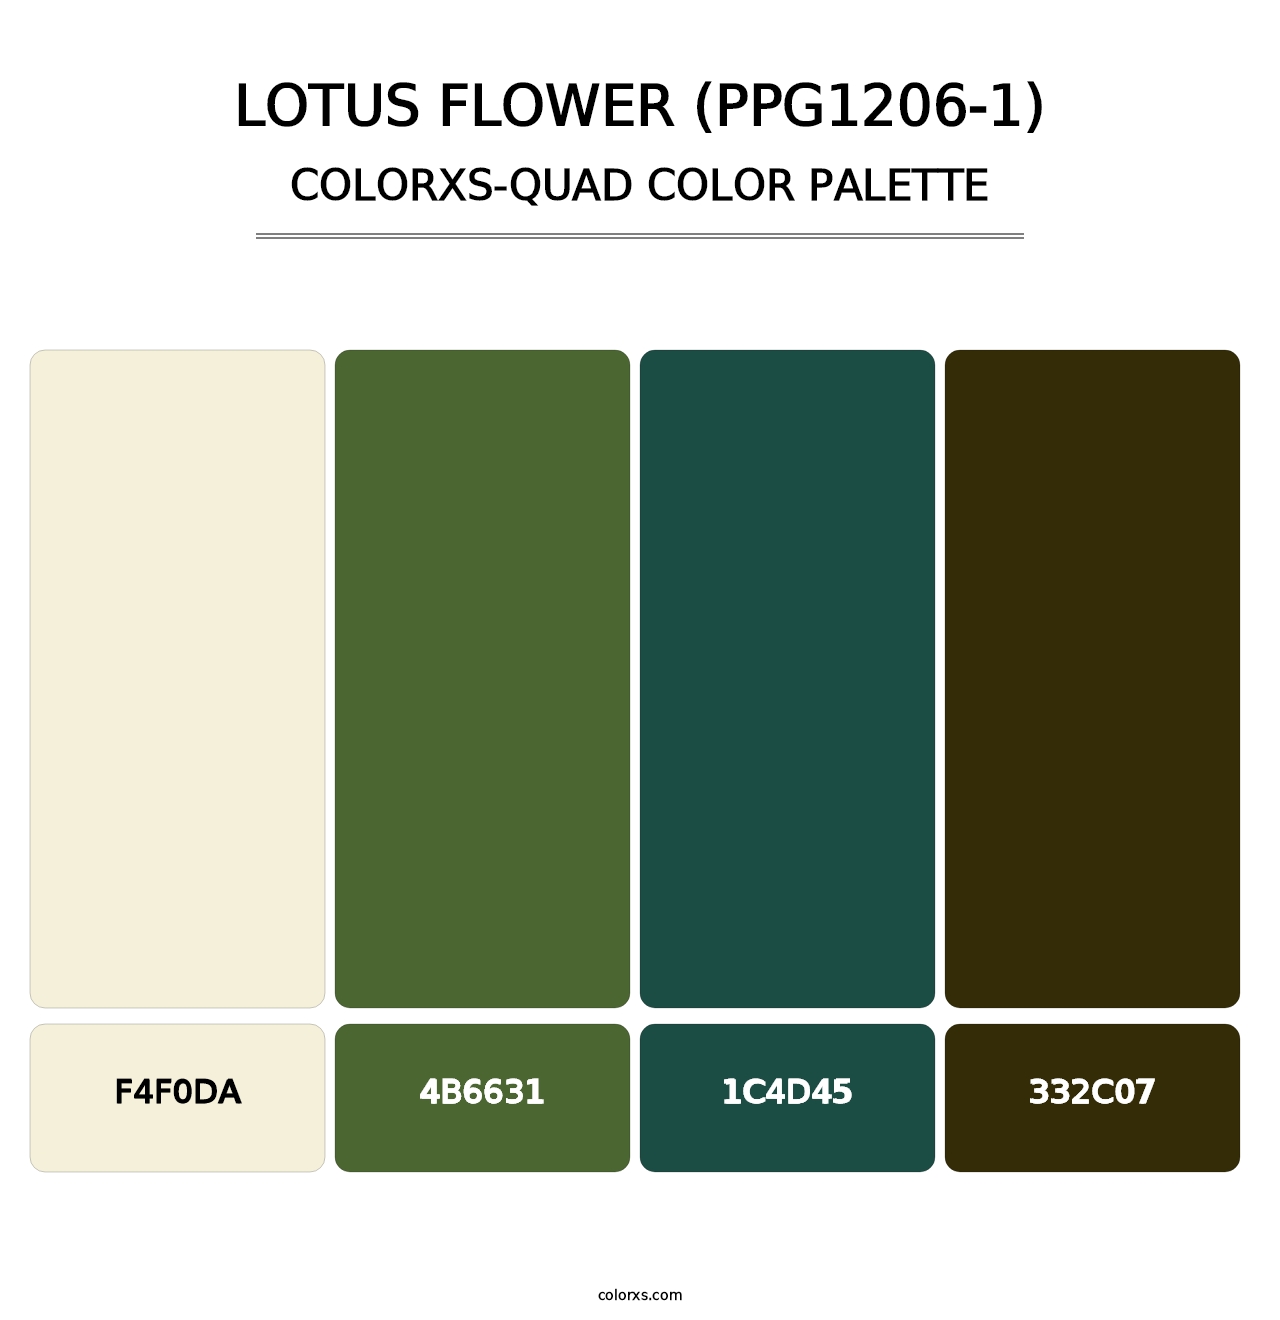 Lotus Flower (PPG1206-1) - Colorxs Quad Palette